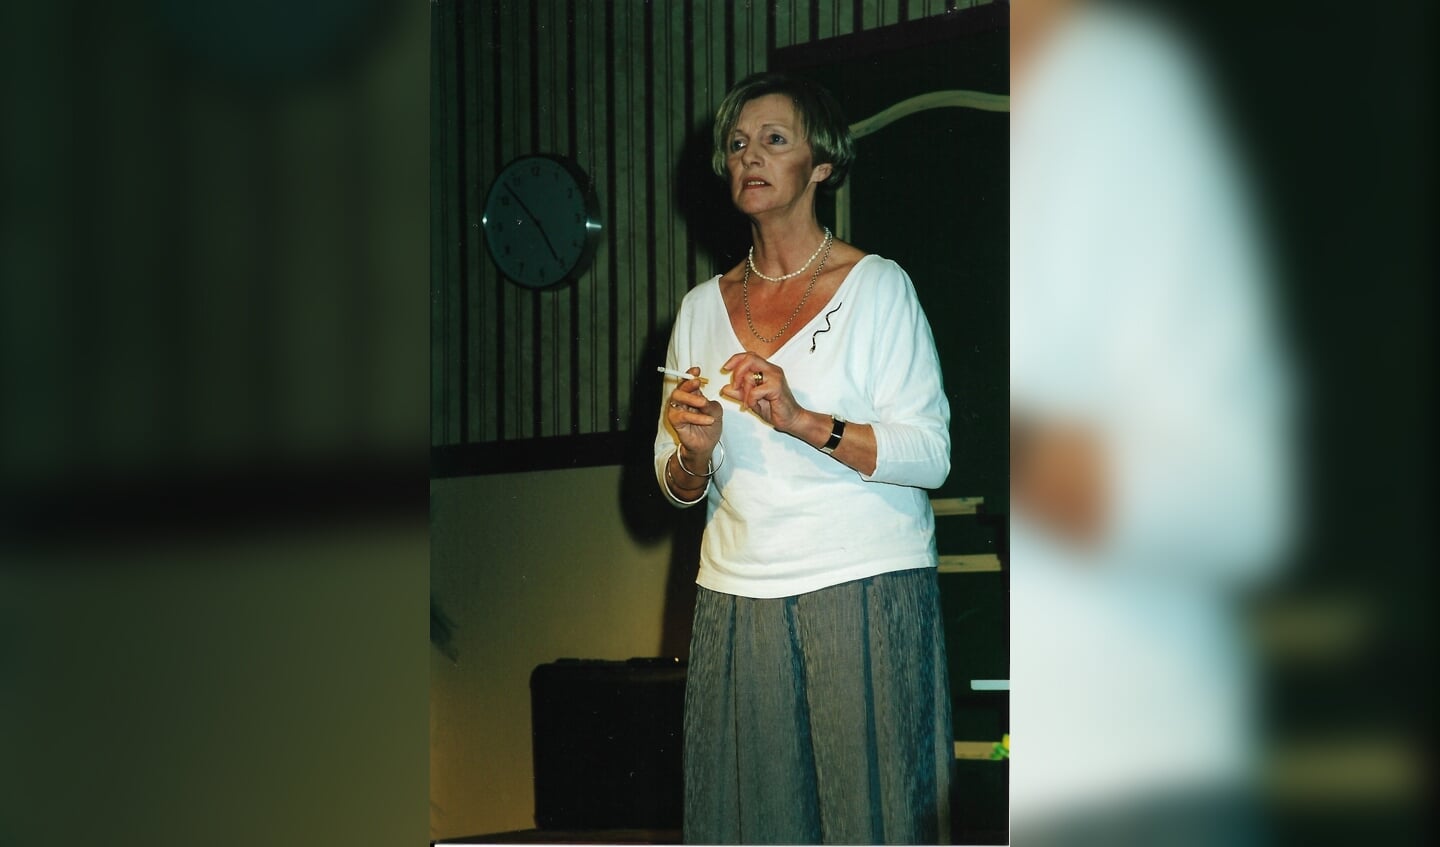 Anny als alcoholiste in 'Doos met kruimels' (2000). Foto: persoonlijk archief Anny